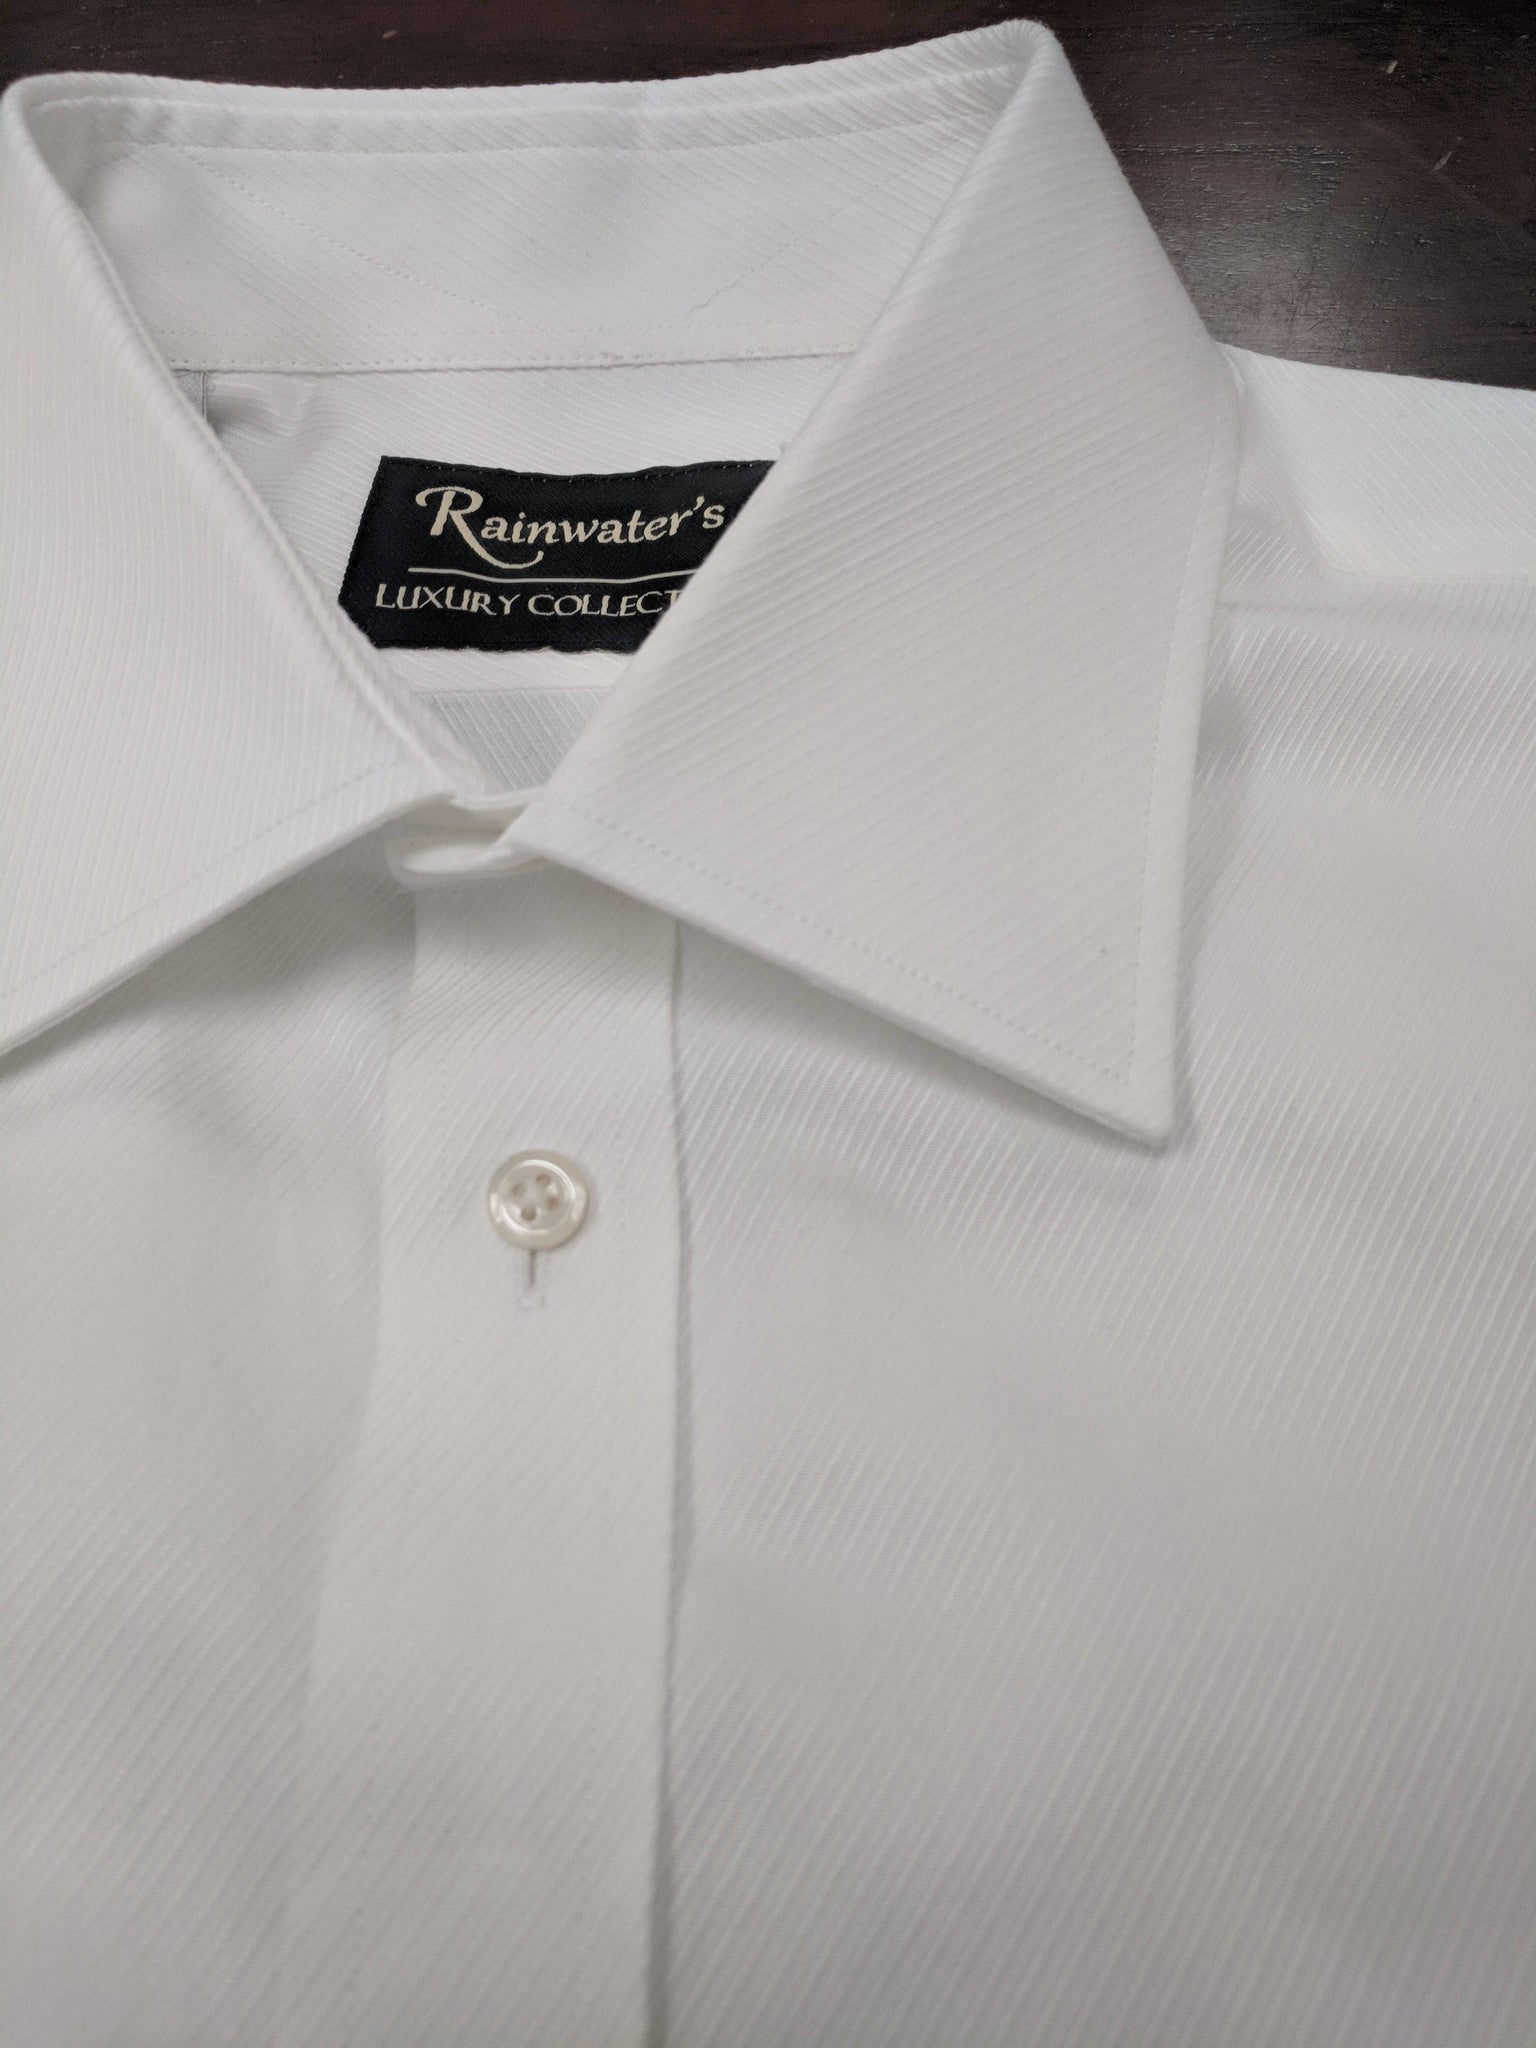 Rainwater's Luxury White Twill French Cuff Dress Shirt - Rainwater's Men's Clothing and Tuxedo Rental